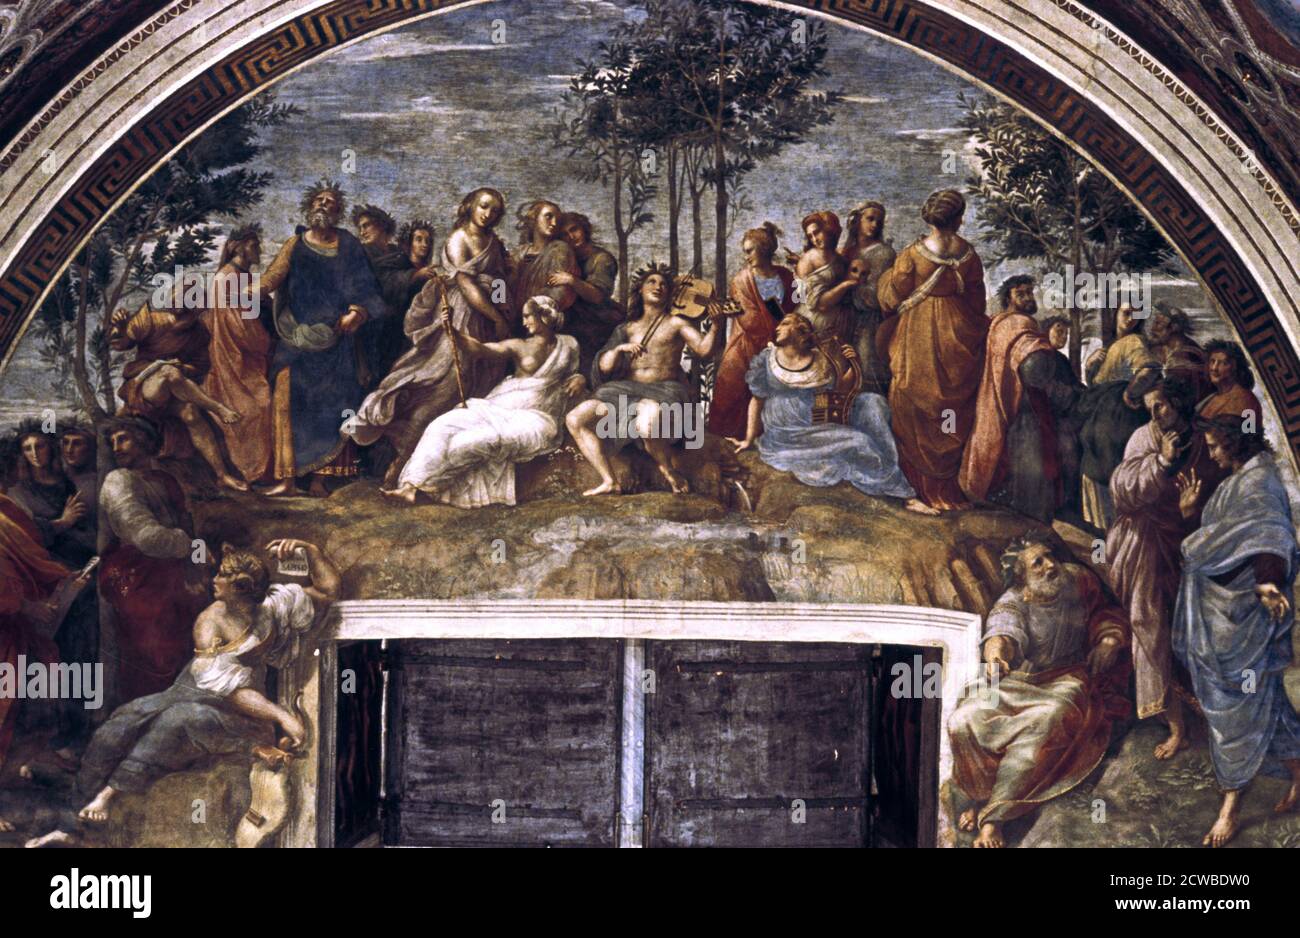 Der Parnassus, von der Stanza delle Segnatura', 1510-1511. Künstler: Raphael. Raphael (1483-1520) war ein italienischer Maler und Architekt der Hochrenaissance. Seine Arbeit wird für seine Klarheit der Form, Leichtigkeit der Komposition und visuelle Leistung der menschlichen Größe bewundert. Stockfoto